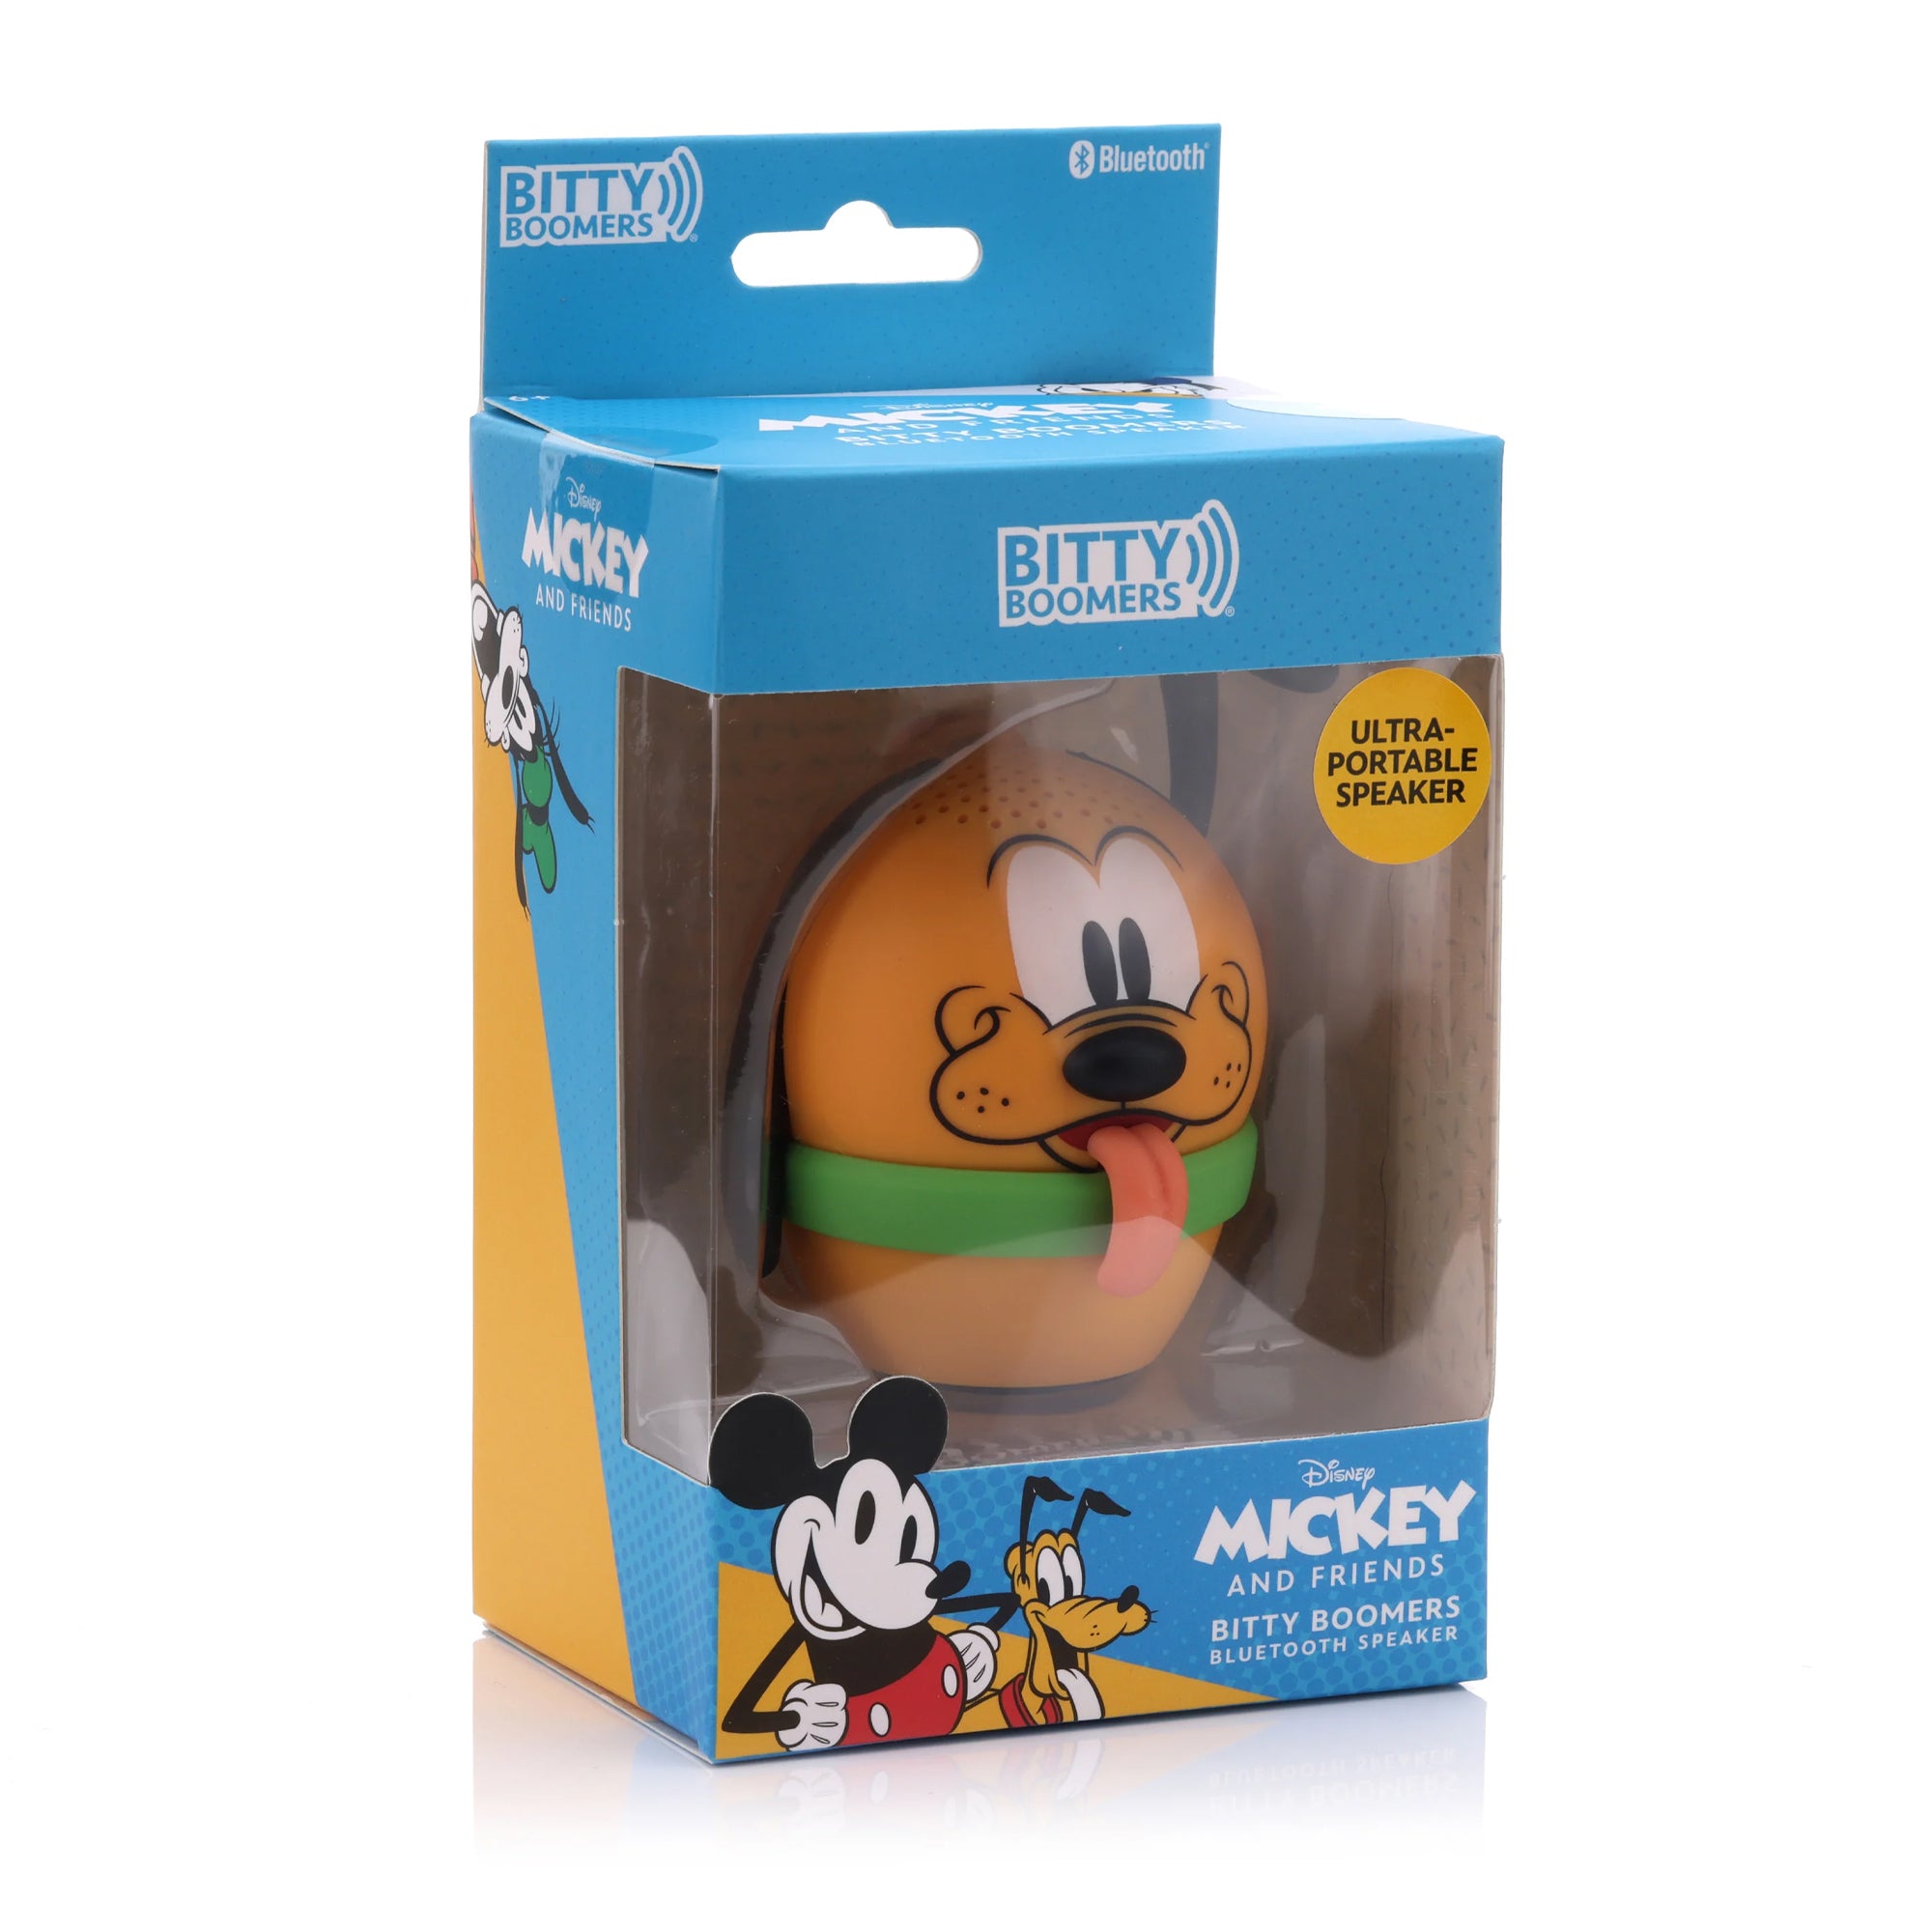 Disney Lilo & Stitch Character Stitch Bitty Boomers Bluetooth